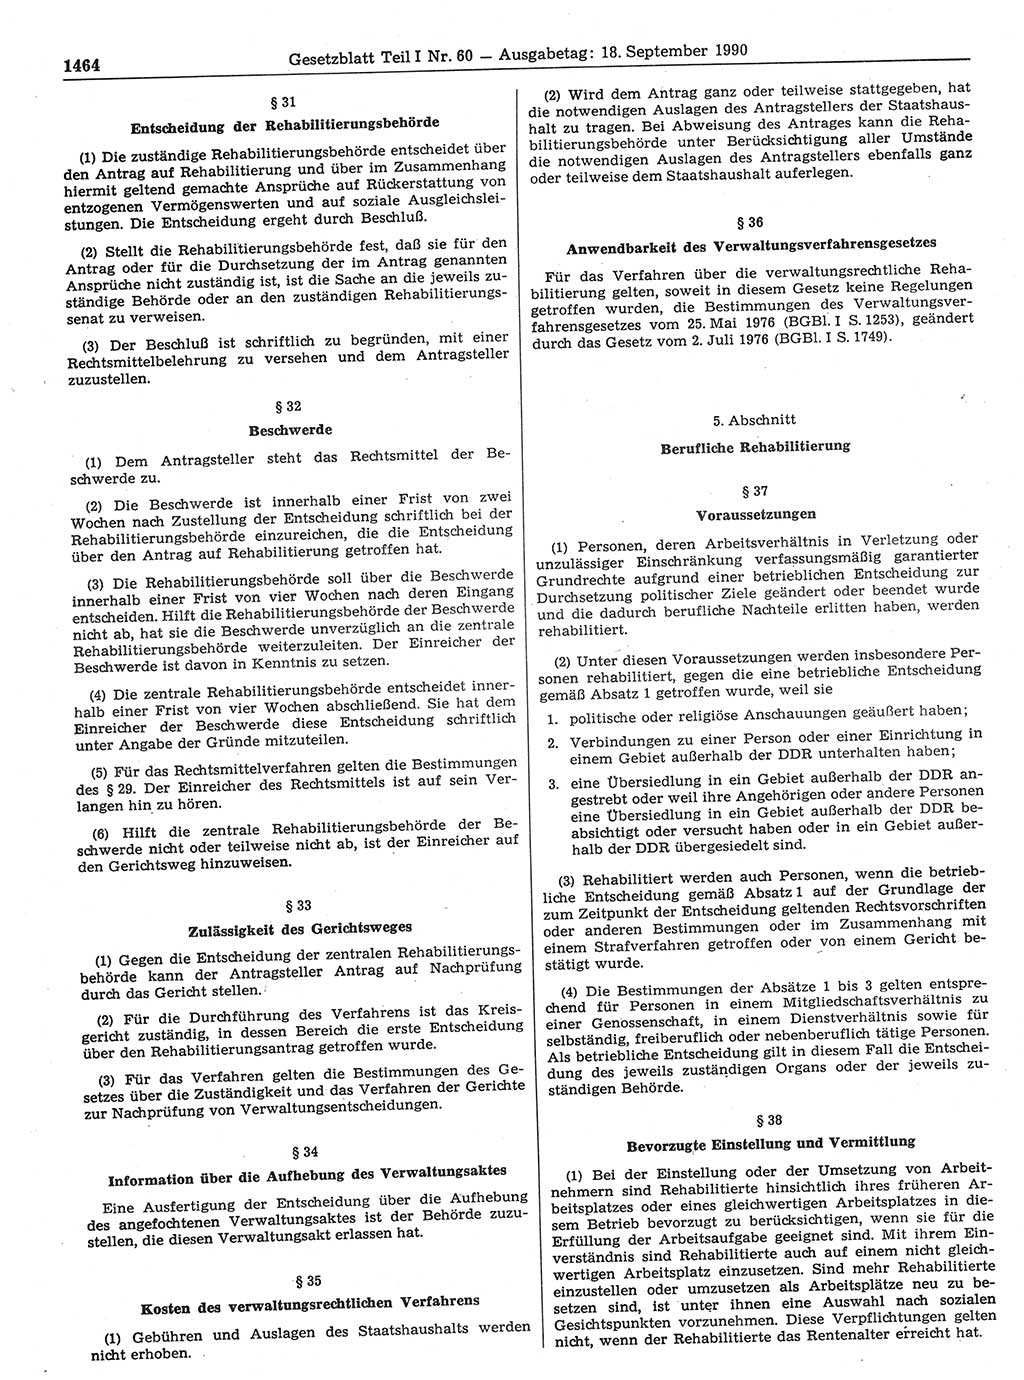 Gesetzblatt (GBl.) der Deutschen Demokratischen Republik (DDR) Teil Ⅰ 1990, Seite 1464 (GBl. DDR Ⅰ 1990, S. 1464)